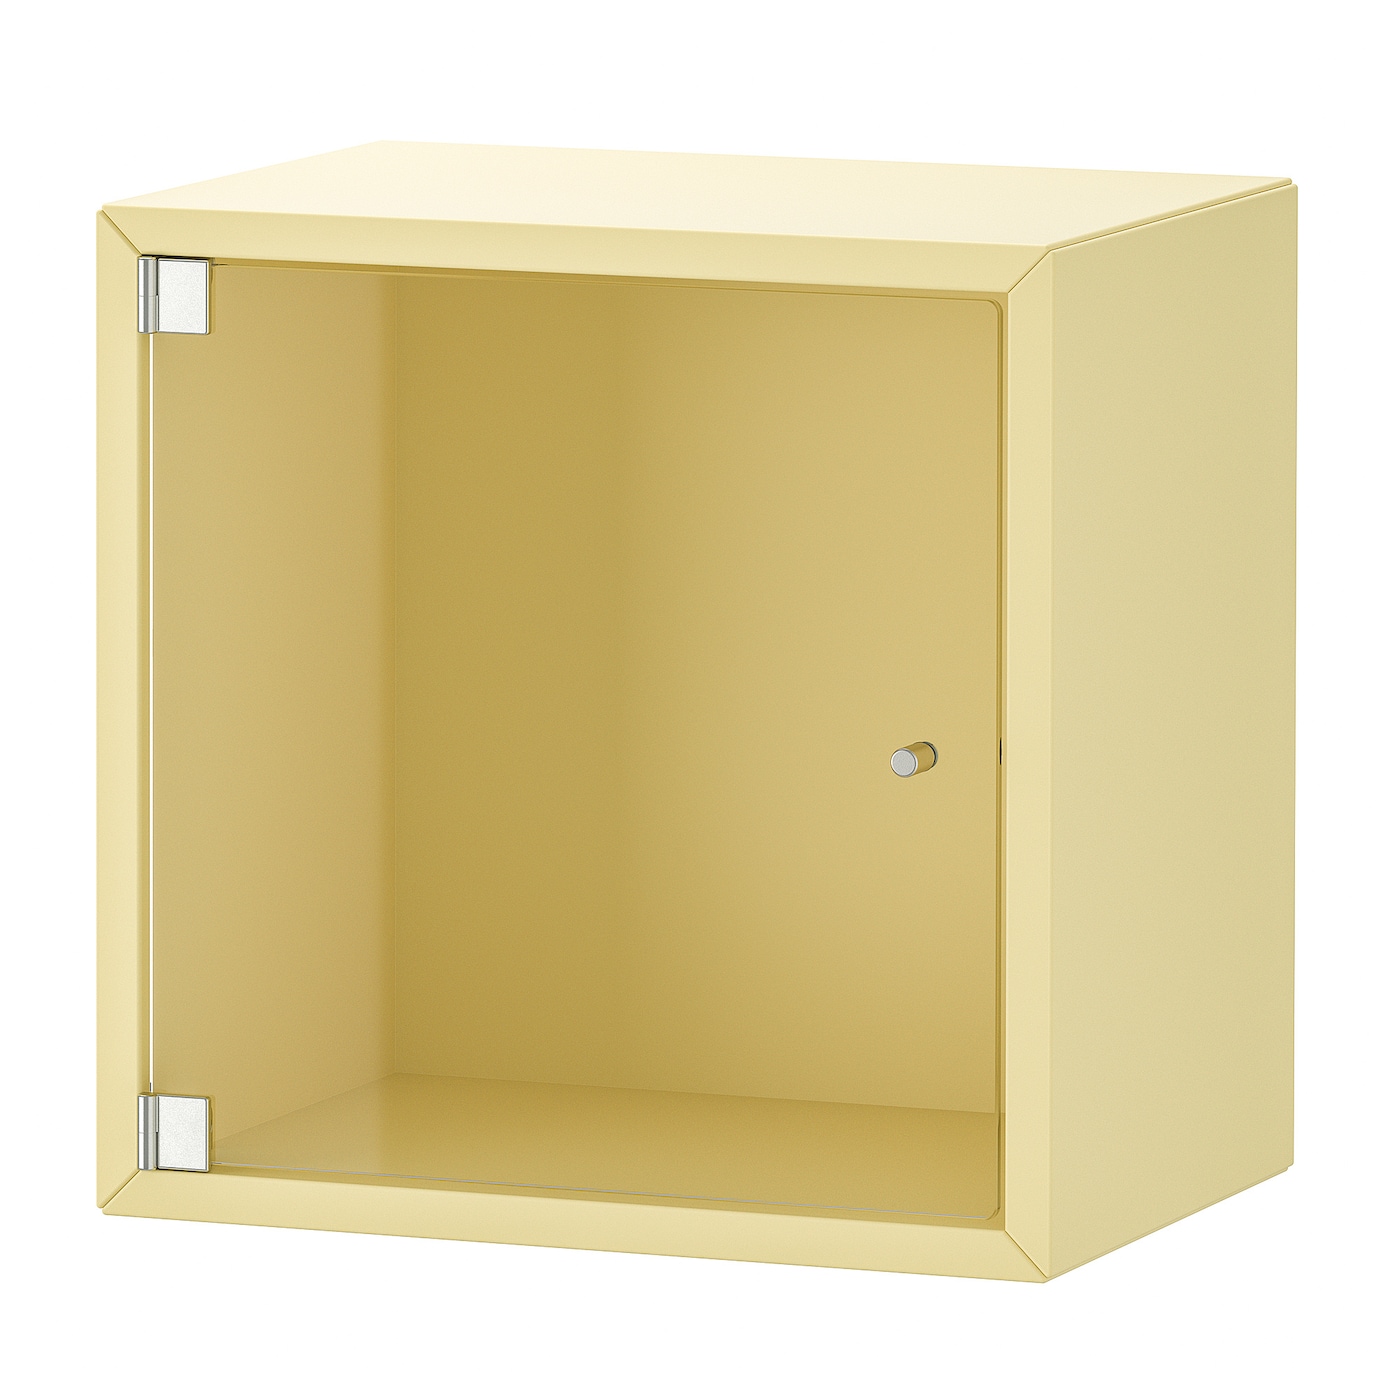 Навесной шкаф со стеклянными дверцами - IKEA EKET/ЭКЕТ ИКЕА, 35х25х35 см, желтый